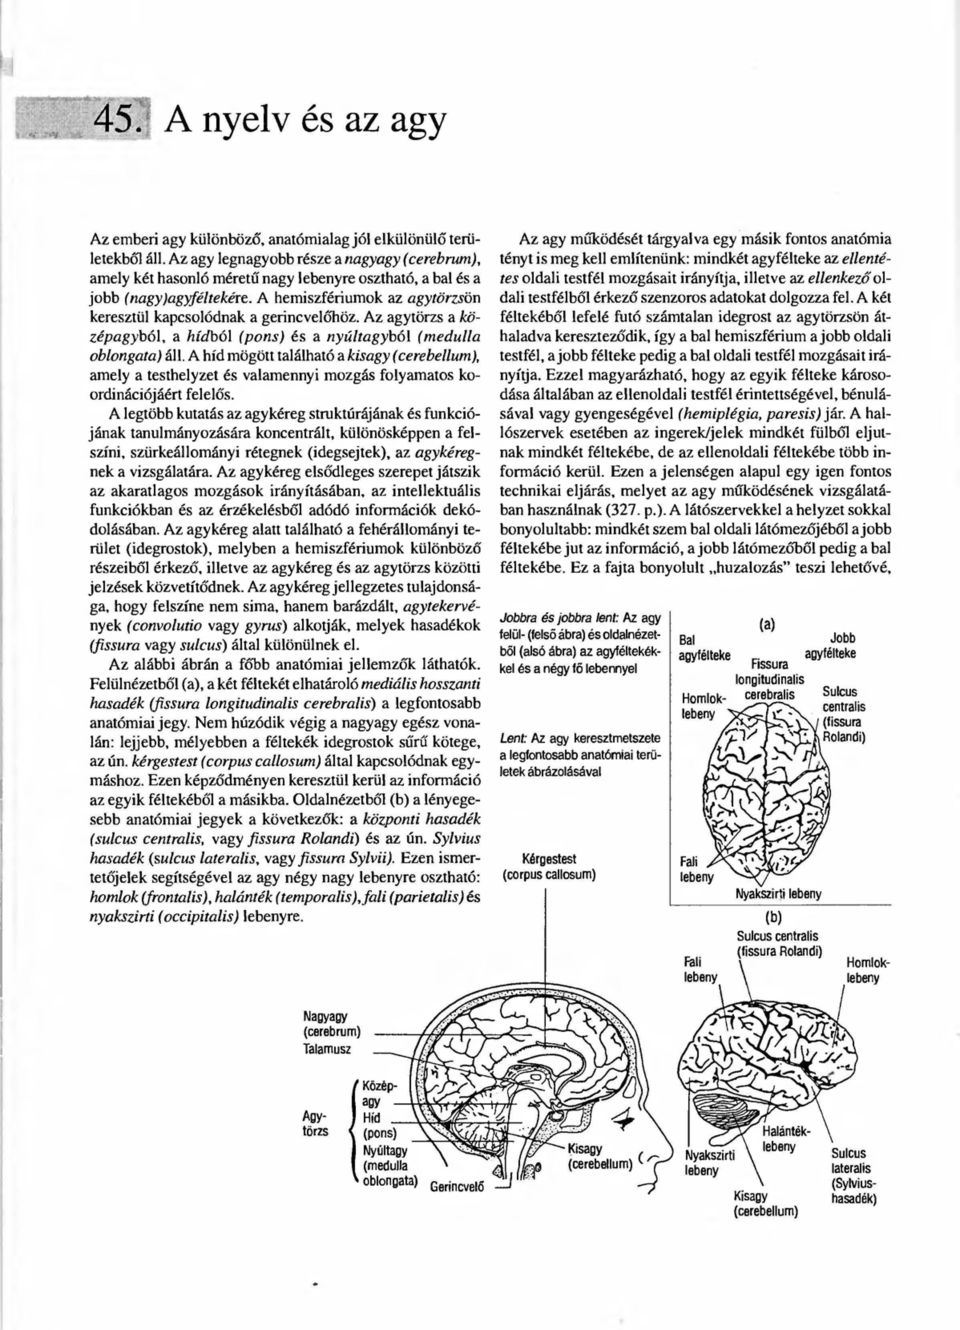 A hemiszfériumok az agytörzsön keresztül kapcsolódnak a gerincvelőhöz. Az agytörzs a középagyból, a hídból (pons) és a nyúltagyból (medulla oblongata) áll.